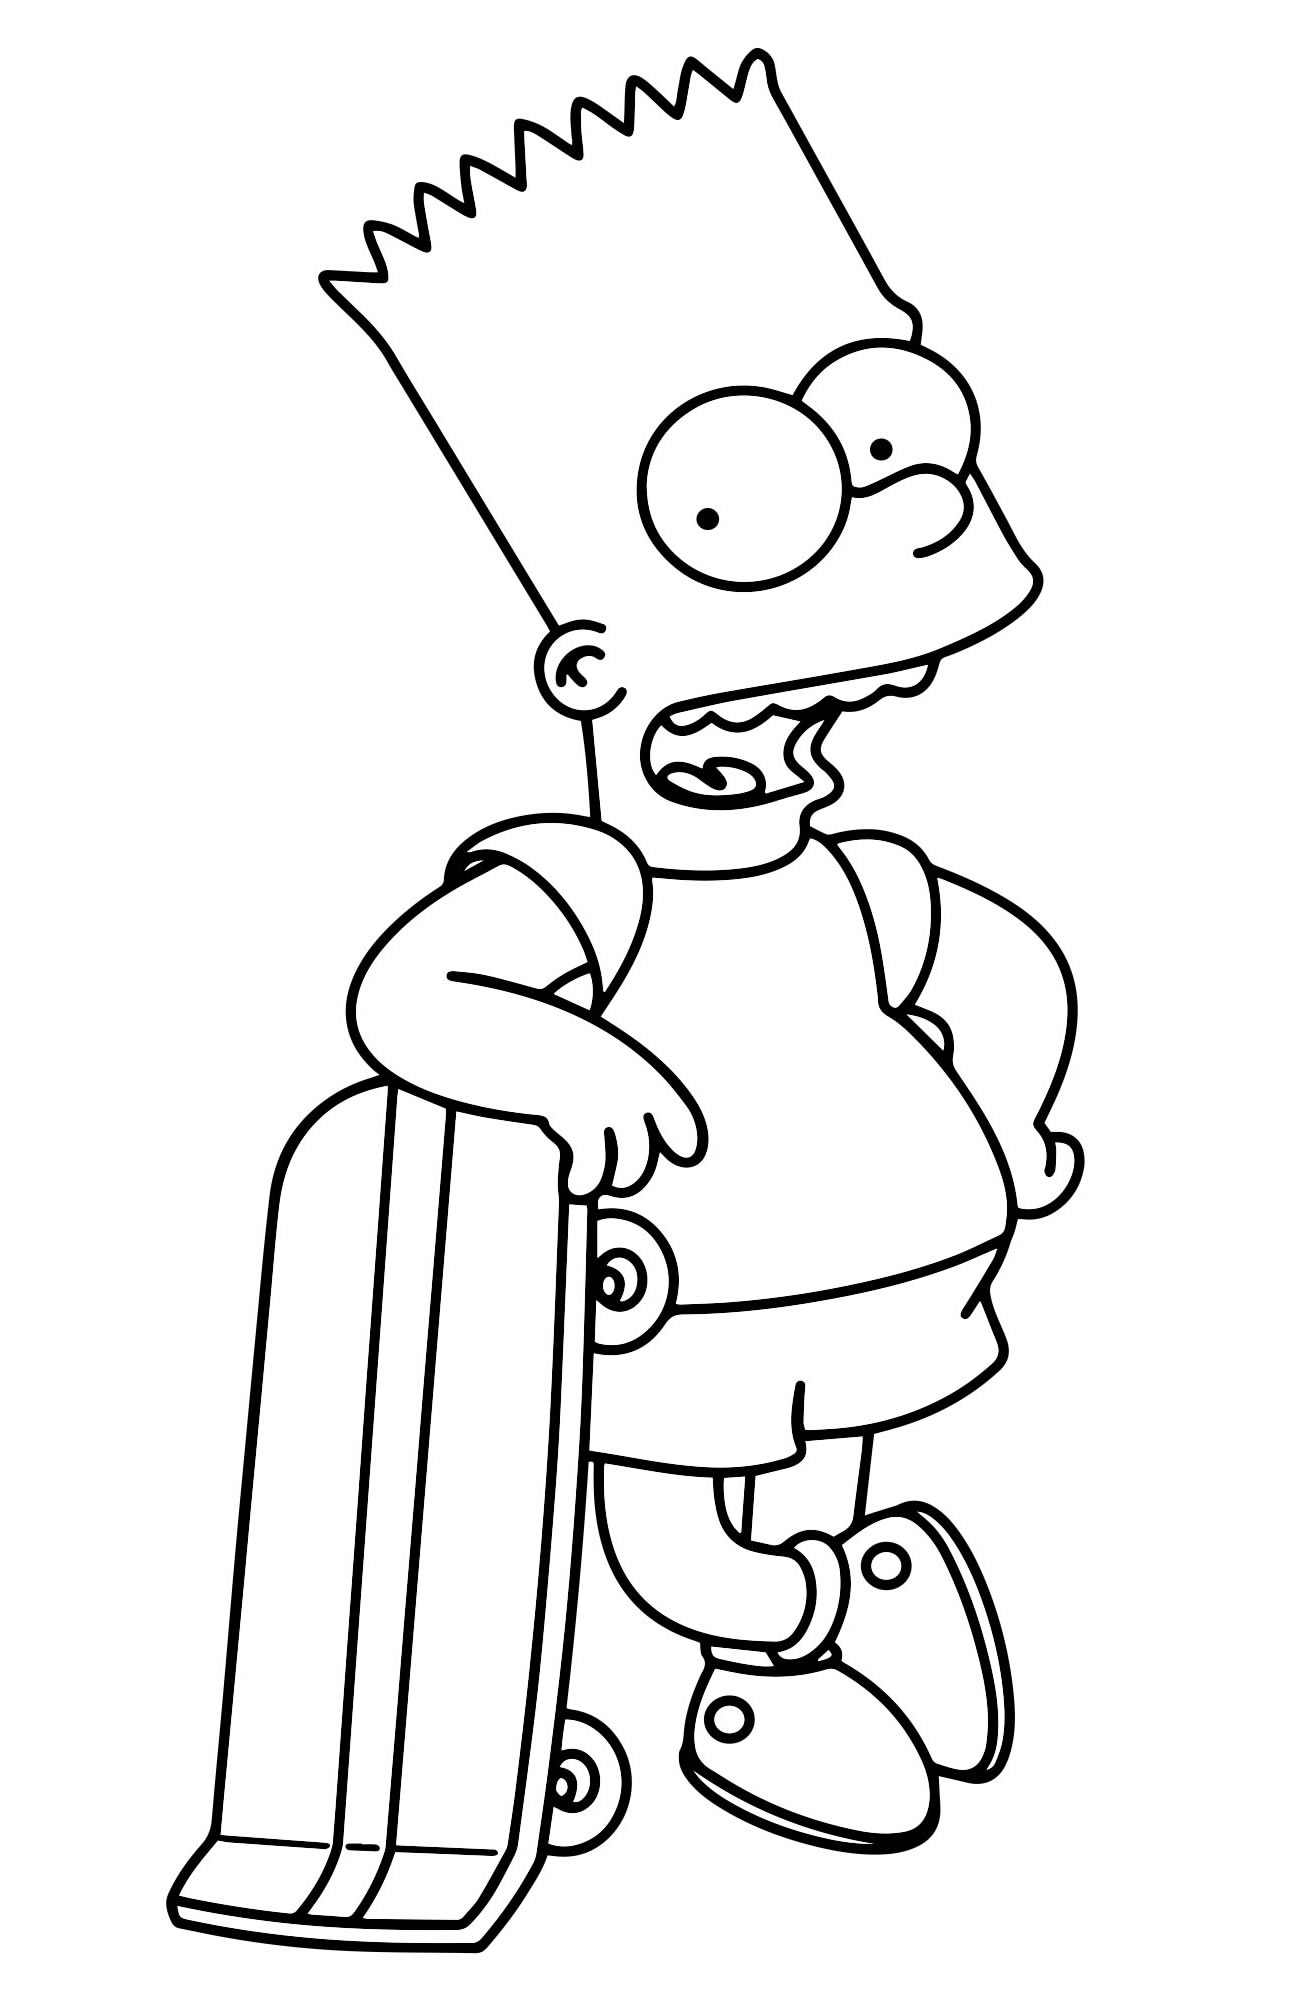 Барт со скейтом раскраска для детей